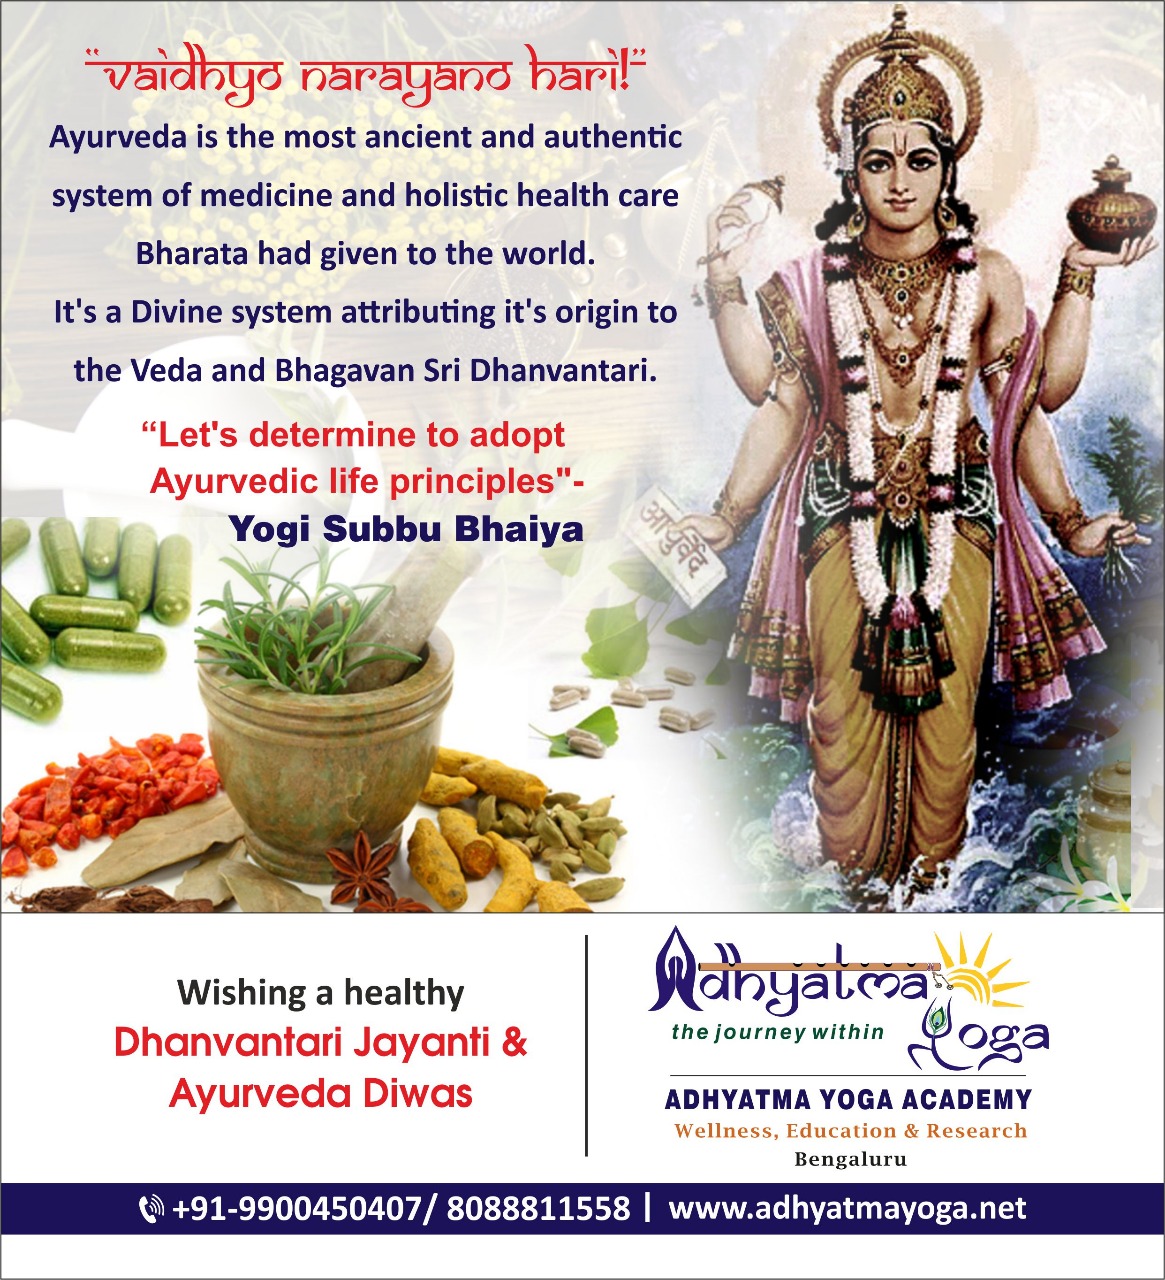 Dhanvantari Jayanti & Ayurveda Diwas Wish – Adhyatma Yoga